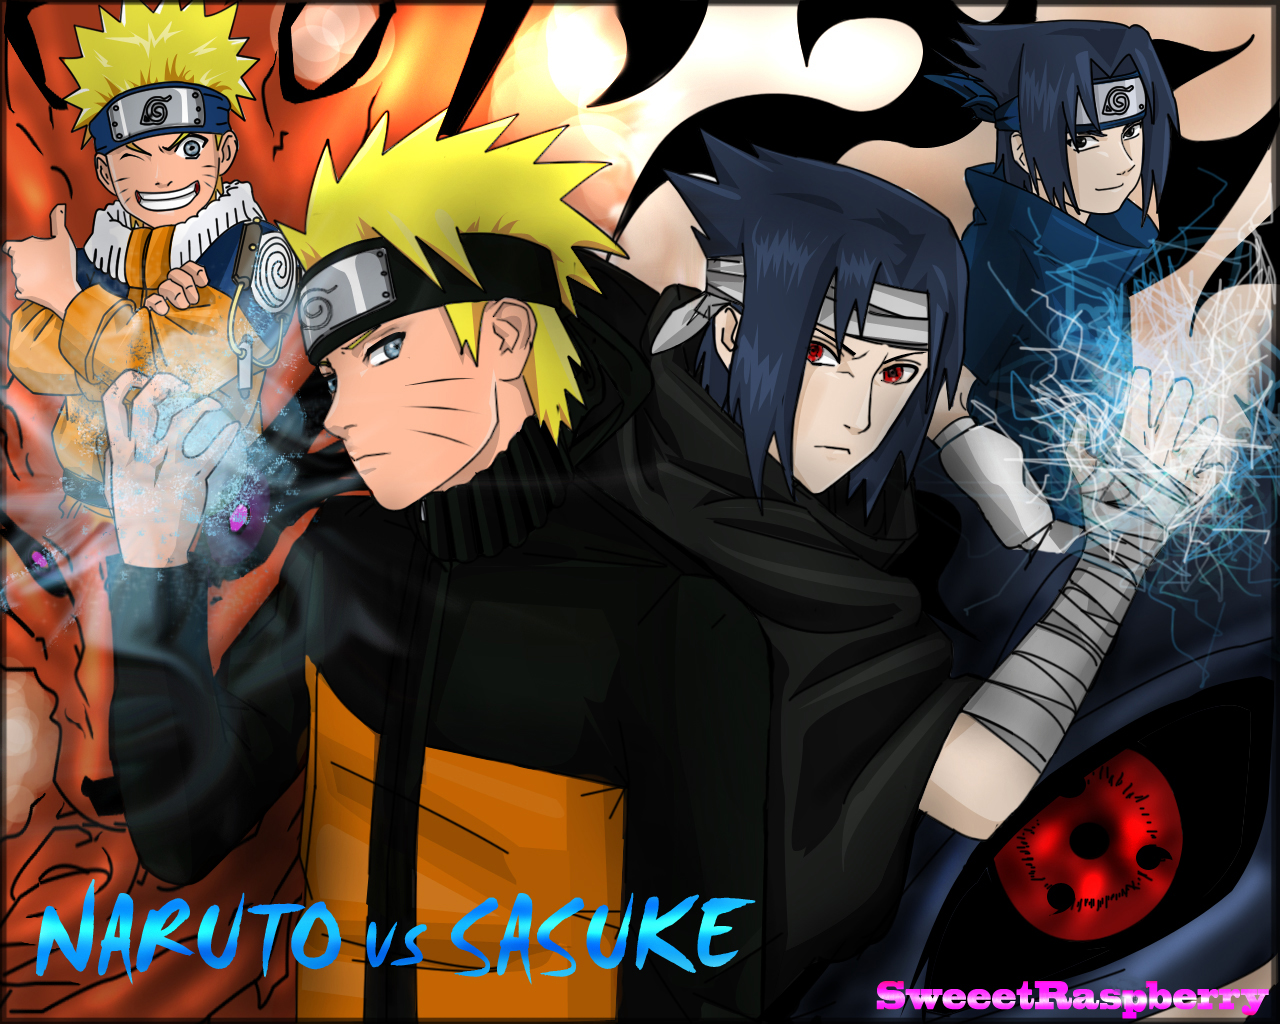 Kumpulan Gambar Picture Naruto Vs Sasuke Cyber Shaper Blog